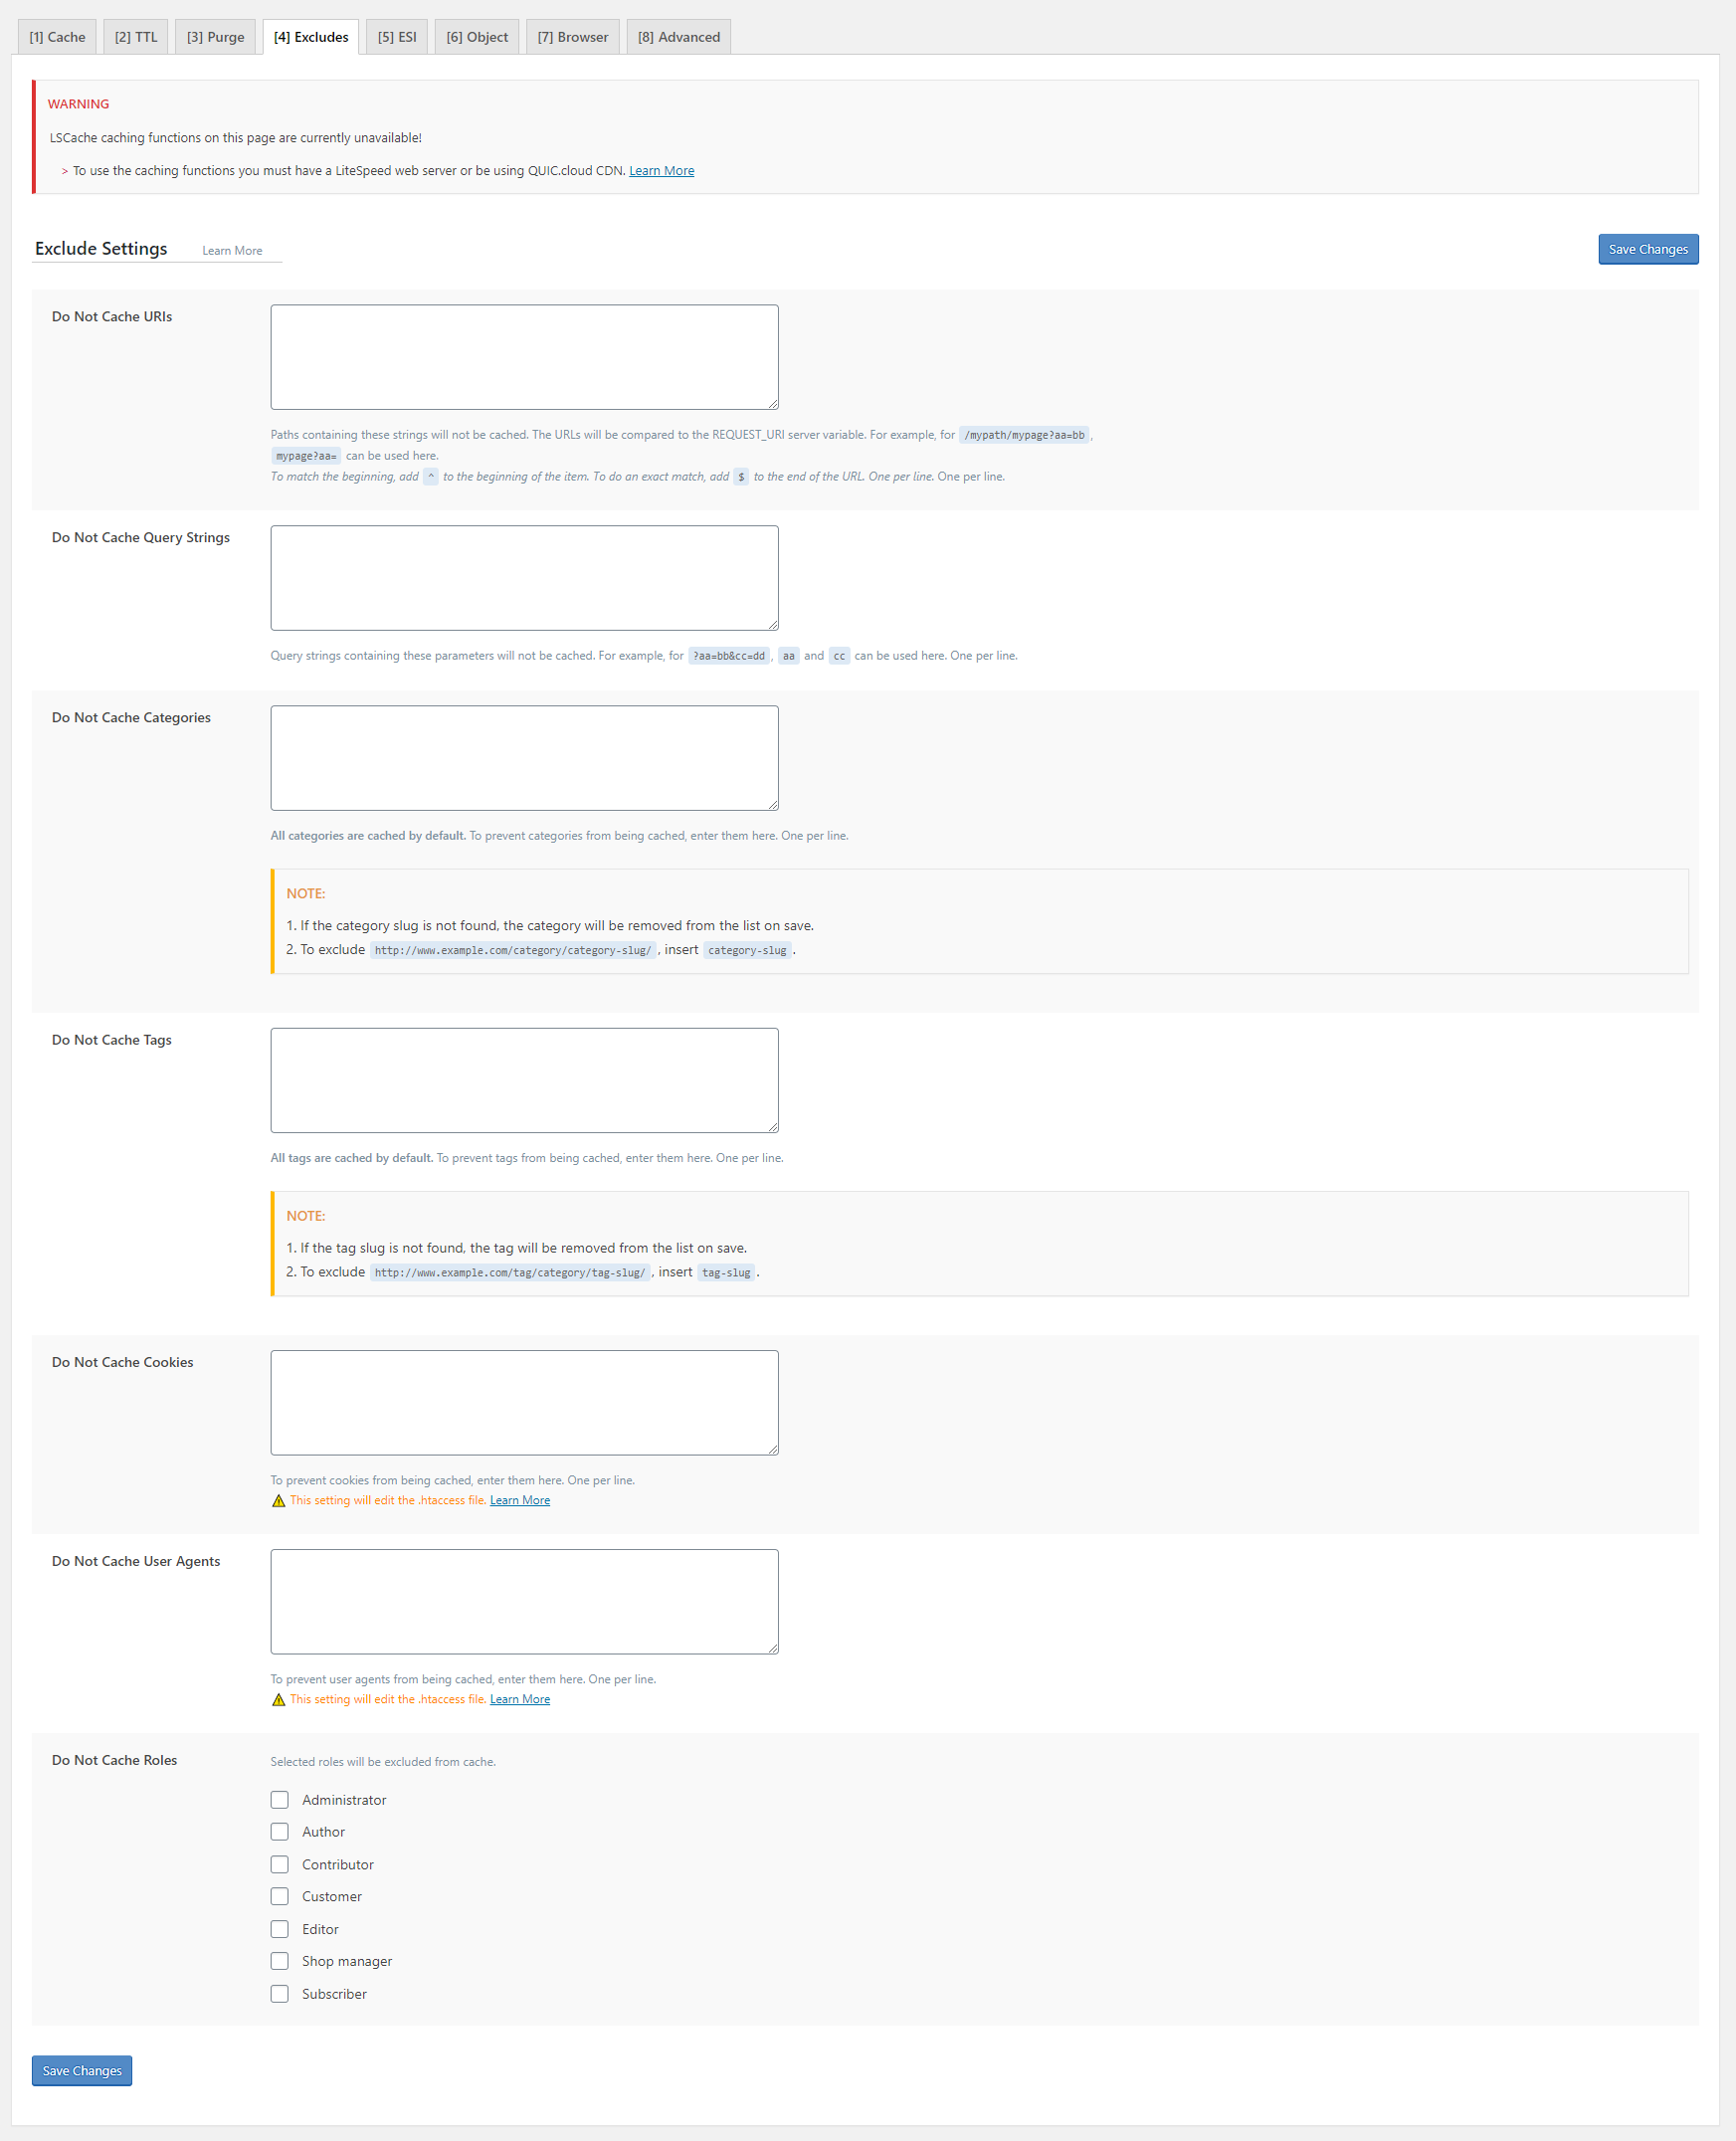 Documentation |Puca – Optimized Mobile WooCommerce Theme